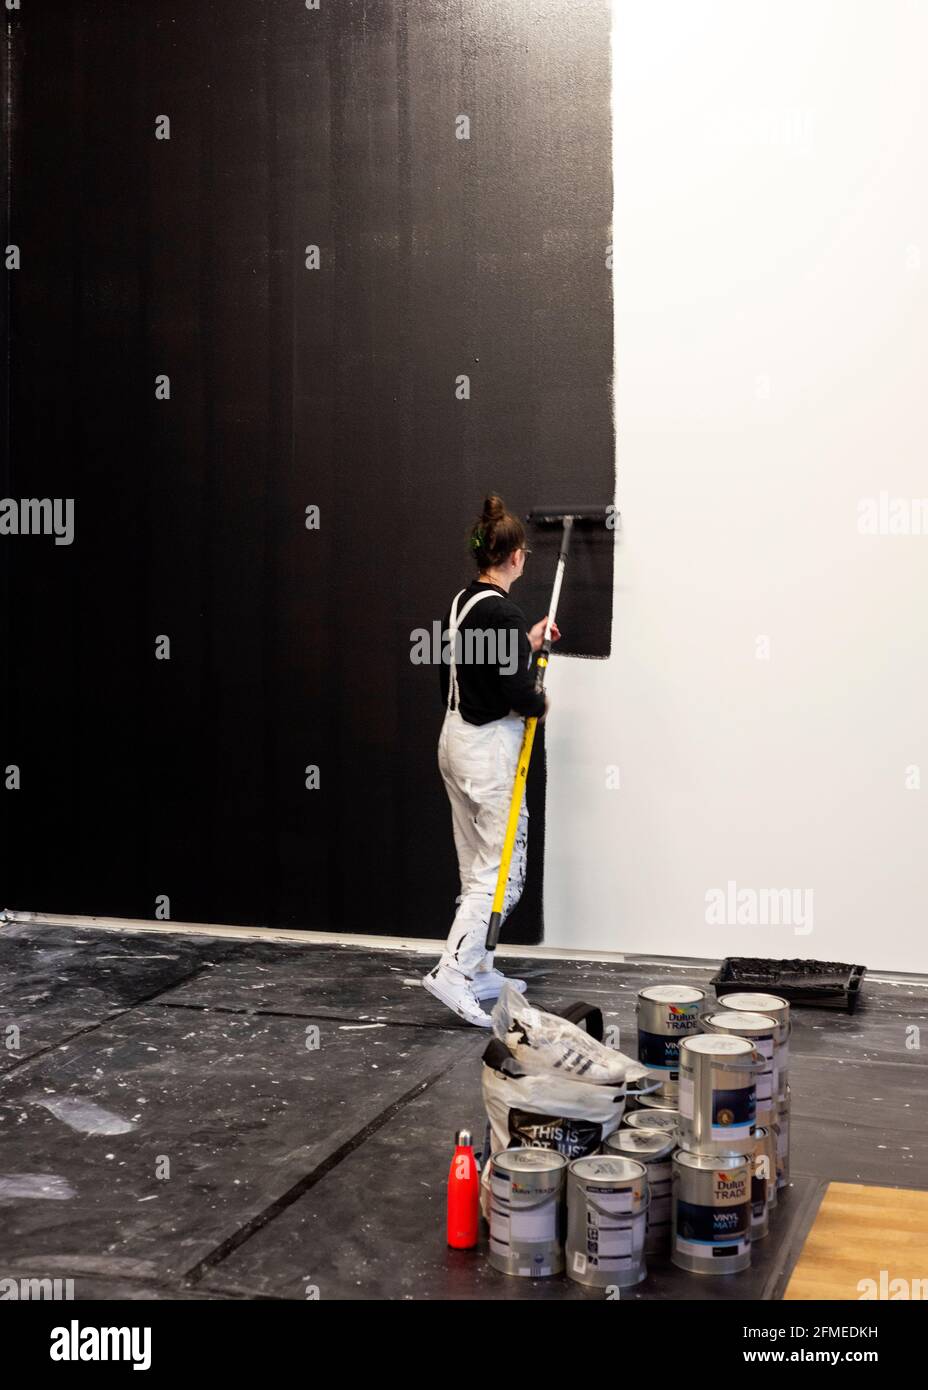 Jeune femme artiste ouvrier peint des murs en noir et blanc dans le cadre de l'installation d'art de performance appelée A Life ( noir et blanc) par l'artiste bulgare Nedko Solakov à Tate Modern, Londres, Royaume-Uni en février 2020. Banque D'Images